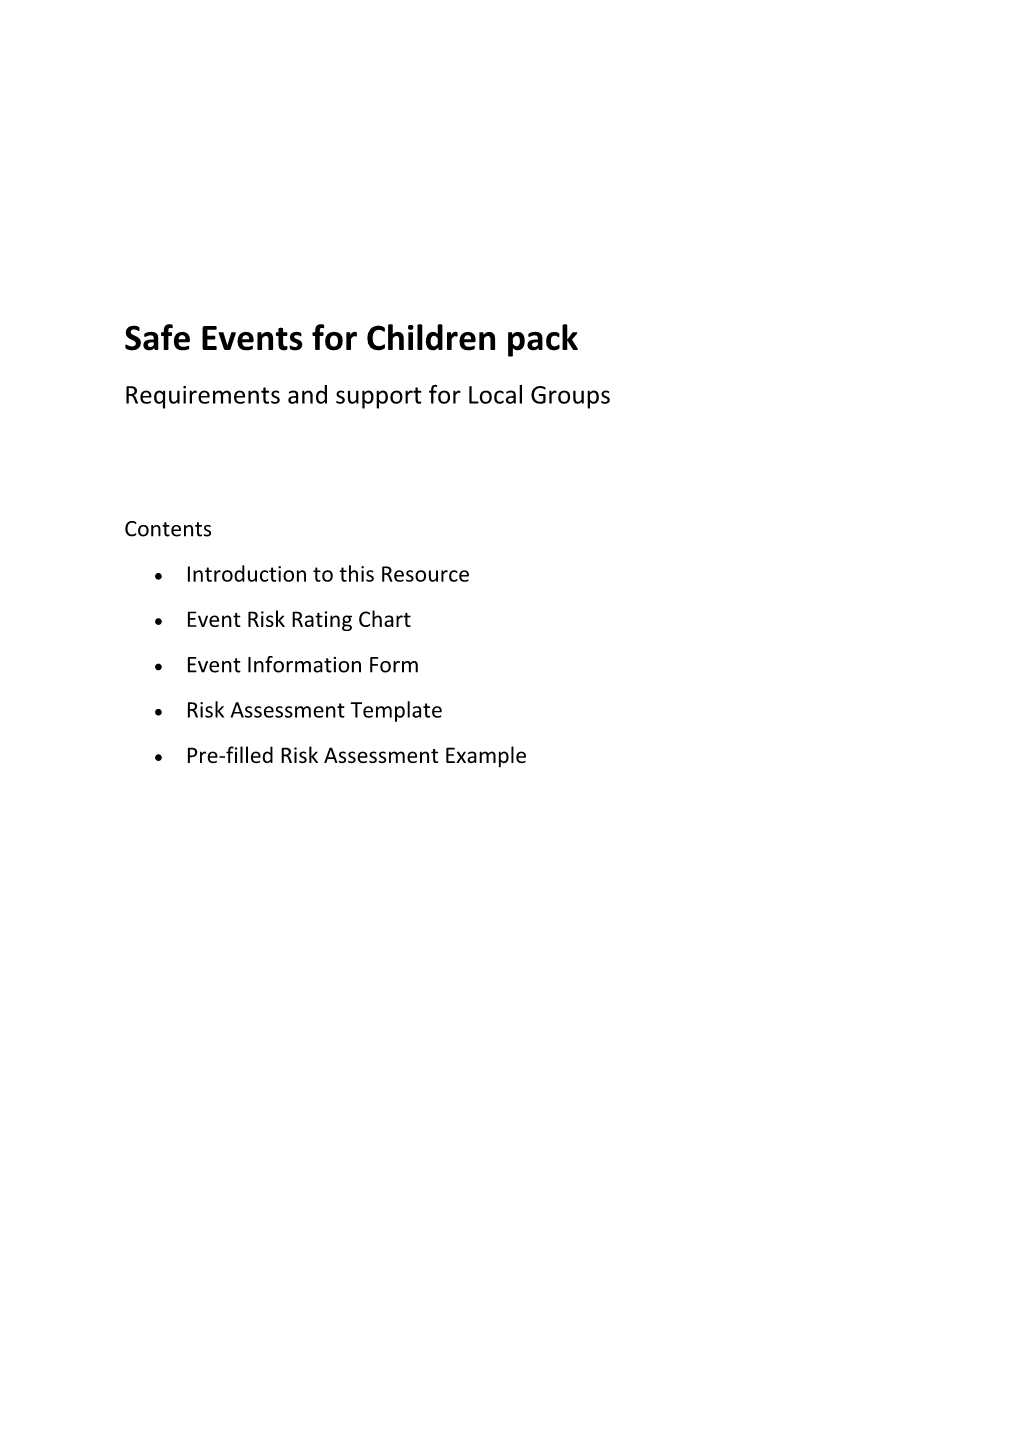 Safe Events for Children Pack